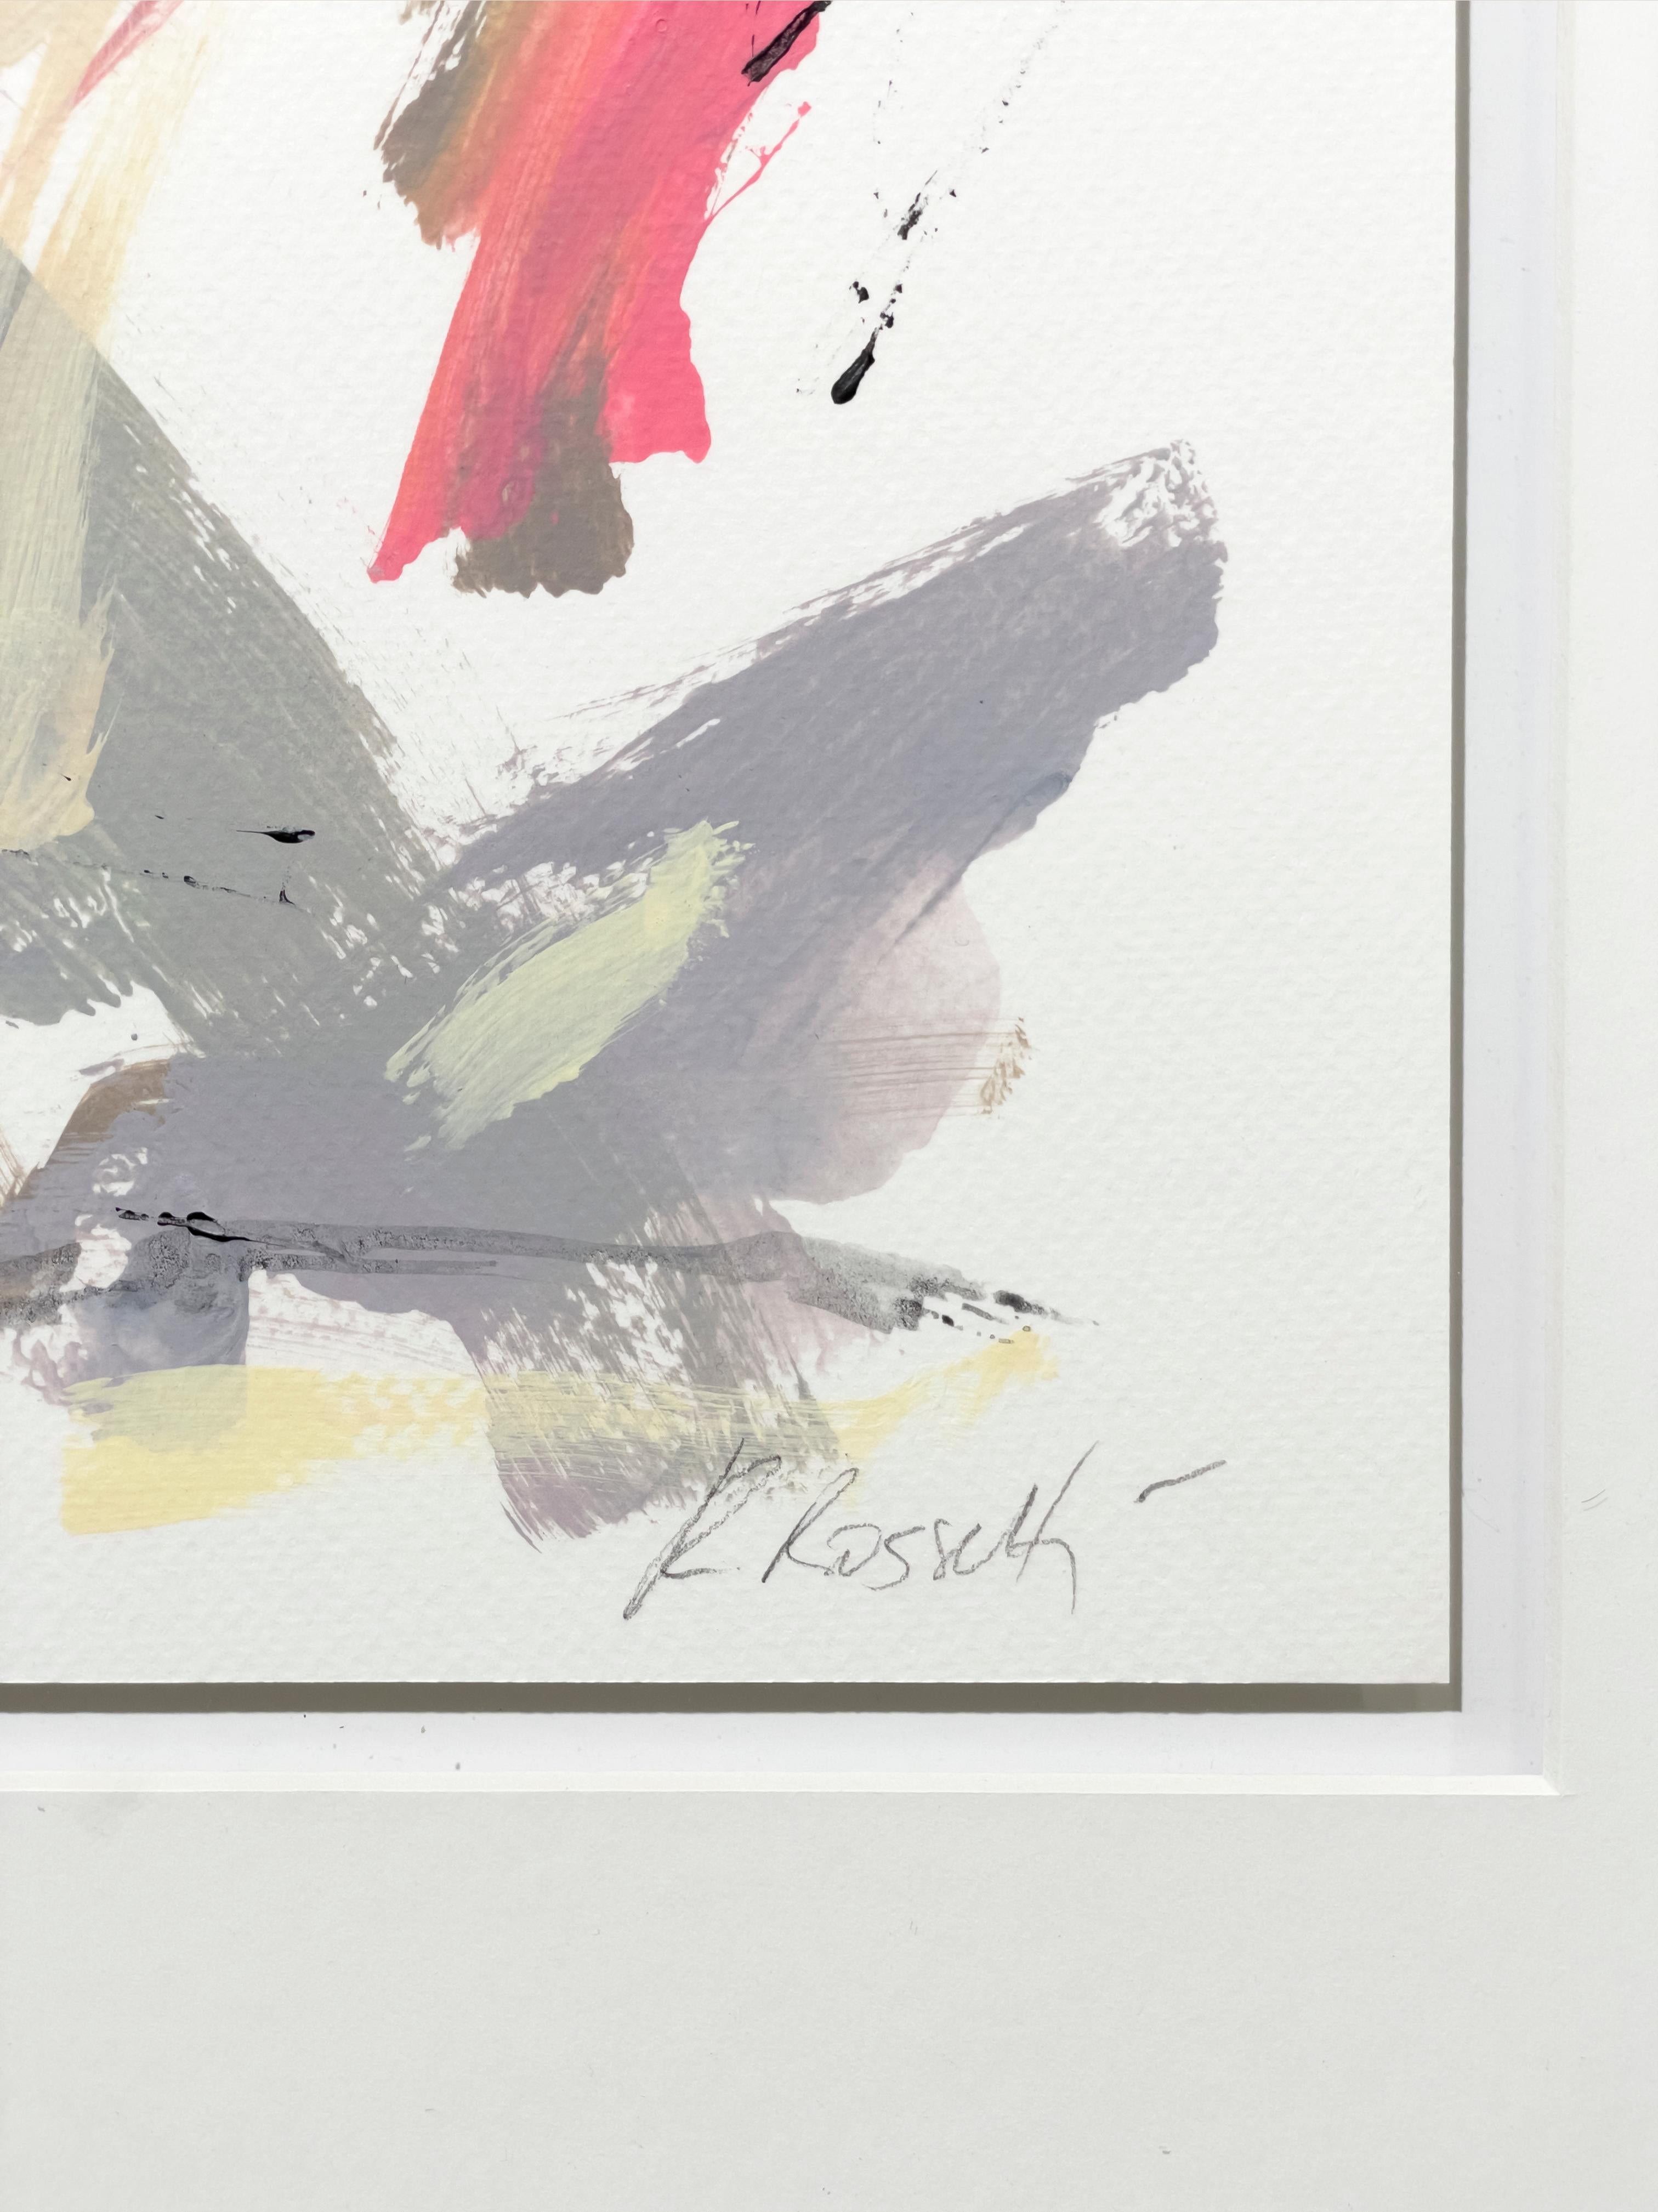 Cette peinture abstraite de Kelly Rossetti est réalisée à l'acrylique sur papier Fabriano pressé à froid, et est encadrée professionnellement dans un cadre blanc. Il se caractérise par une palette légère et sourde et des traits rapides et